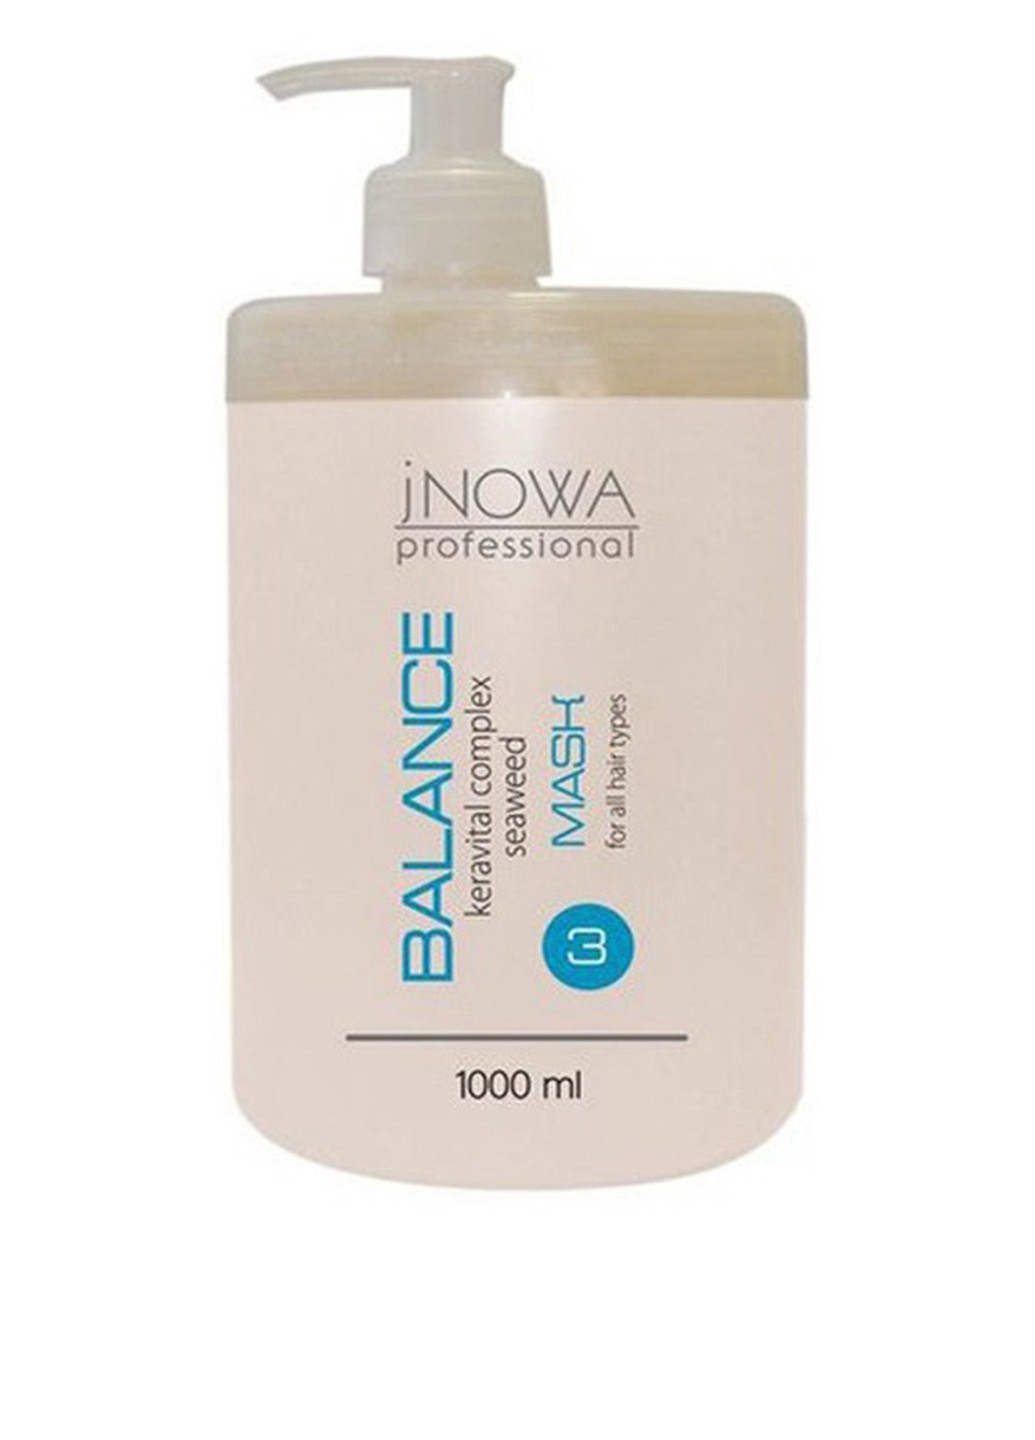 Маска для волосся з морськими водоростями Balance, 1000 мол jNOWA Professional (75834923)